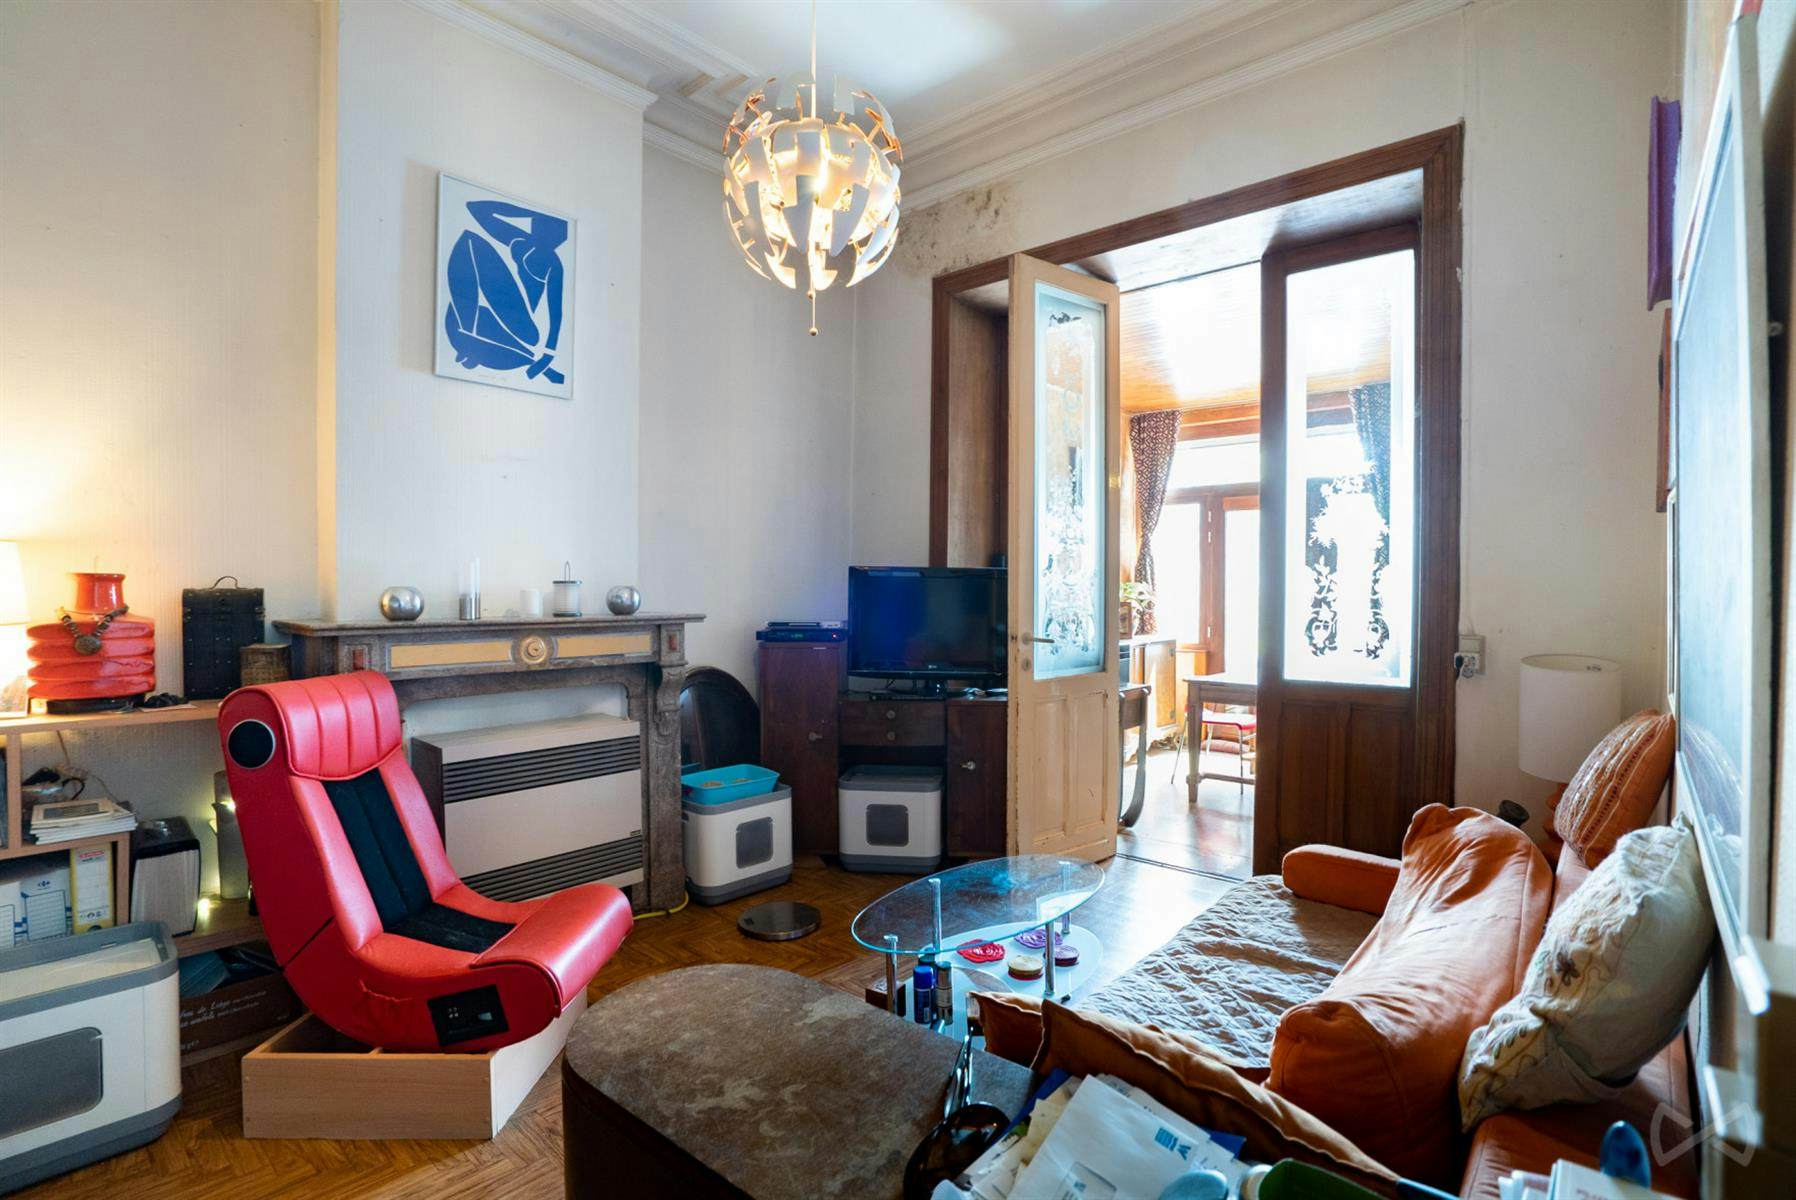 Foto 2 van 4 van Appartementsgebouw met drie slaapkamers in Braine-le-comte